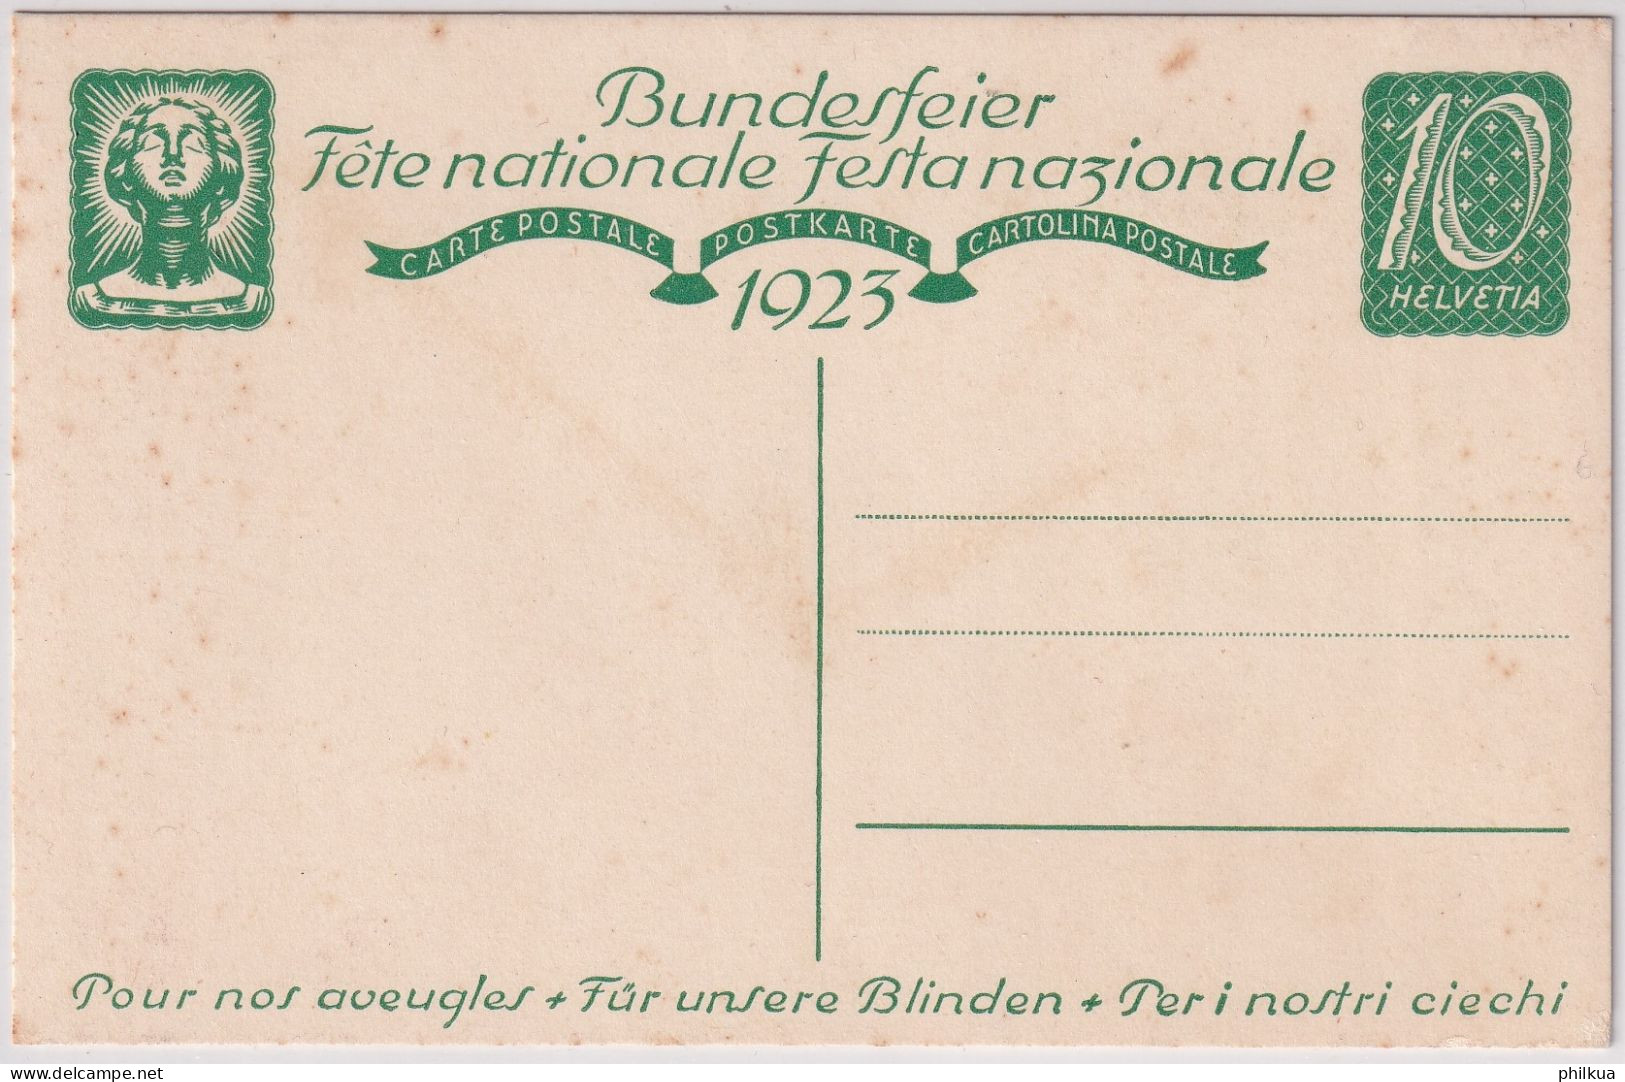 Bundesfeierkarte 1923 - Pour Nos Aveugles - Für Unsere Blinden - Peri Nostri Ciechi - Linden